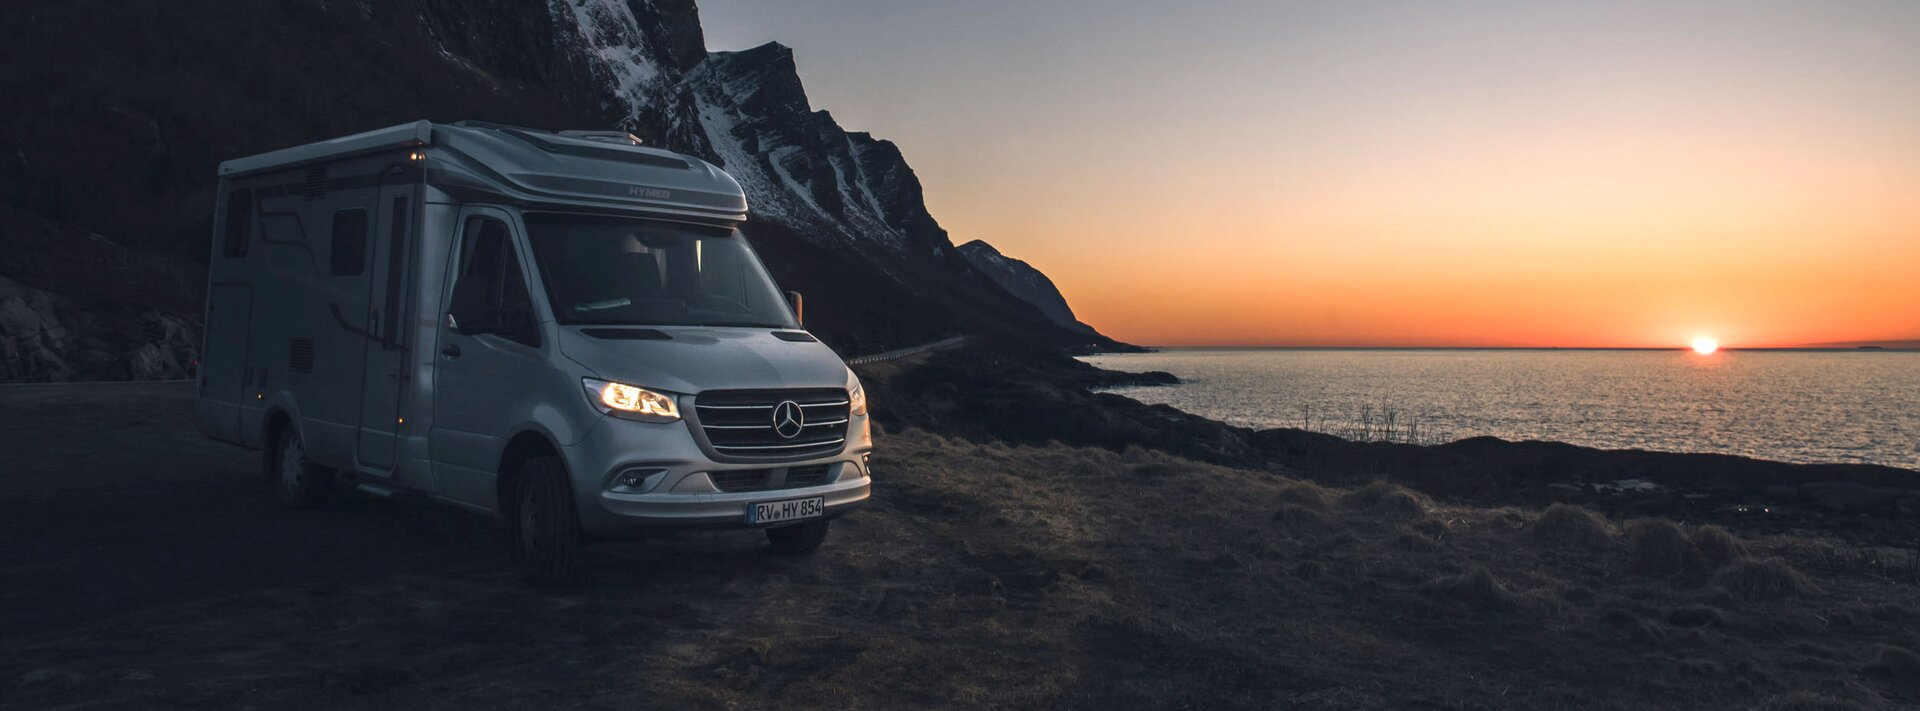 Halfintegrale HYMER-camper op basis van Mercedes bij zonsondergang op het strand met kliffen